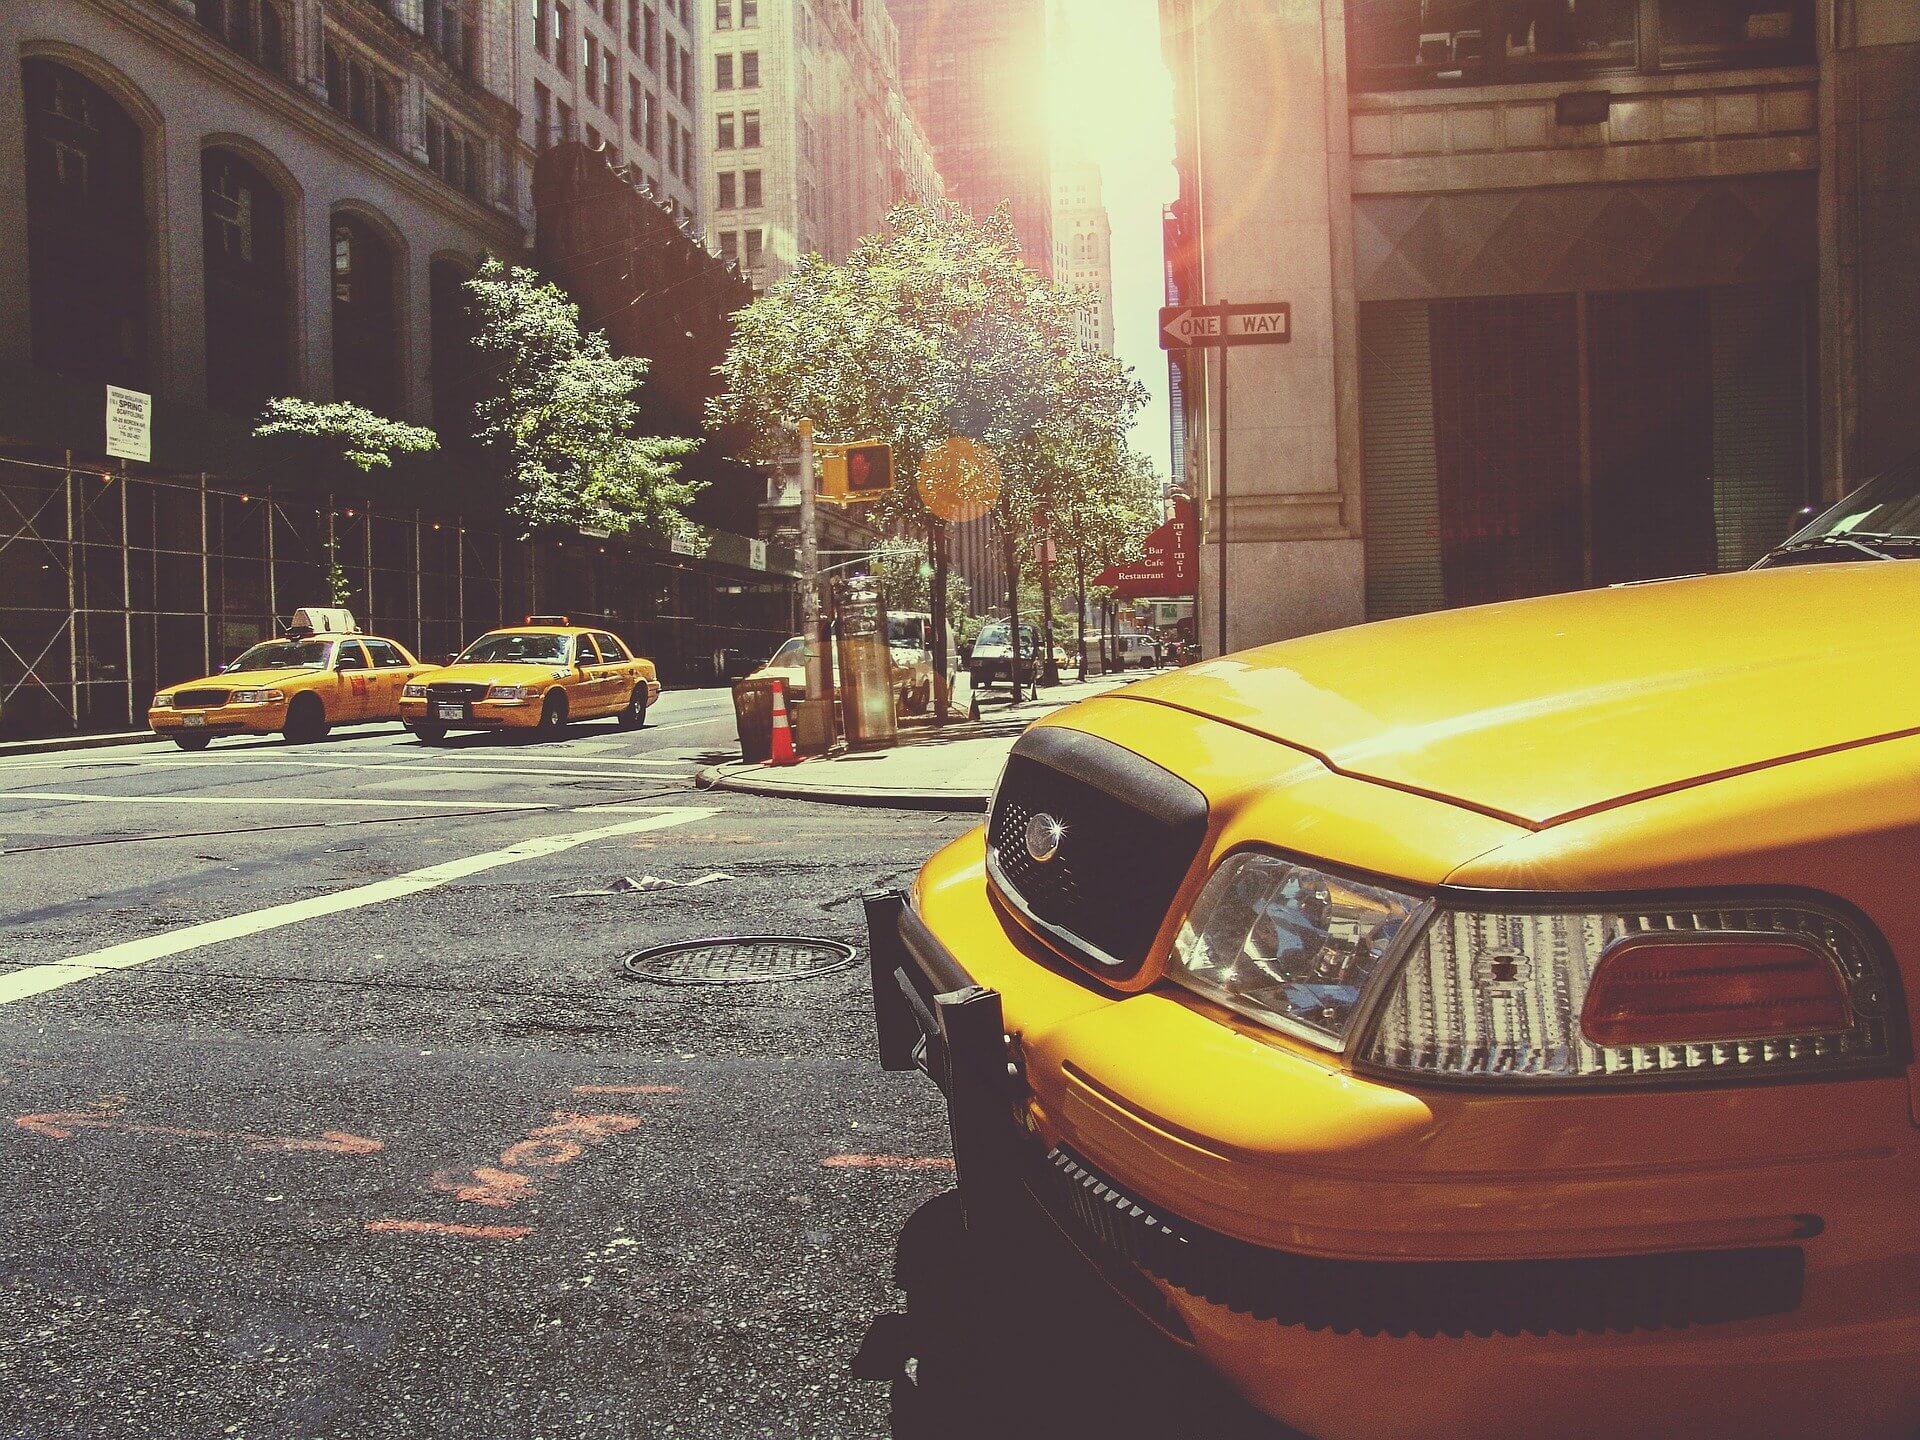 Taxis en Nueva York